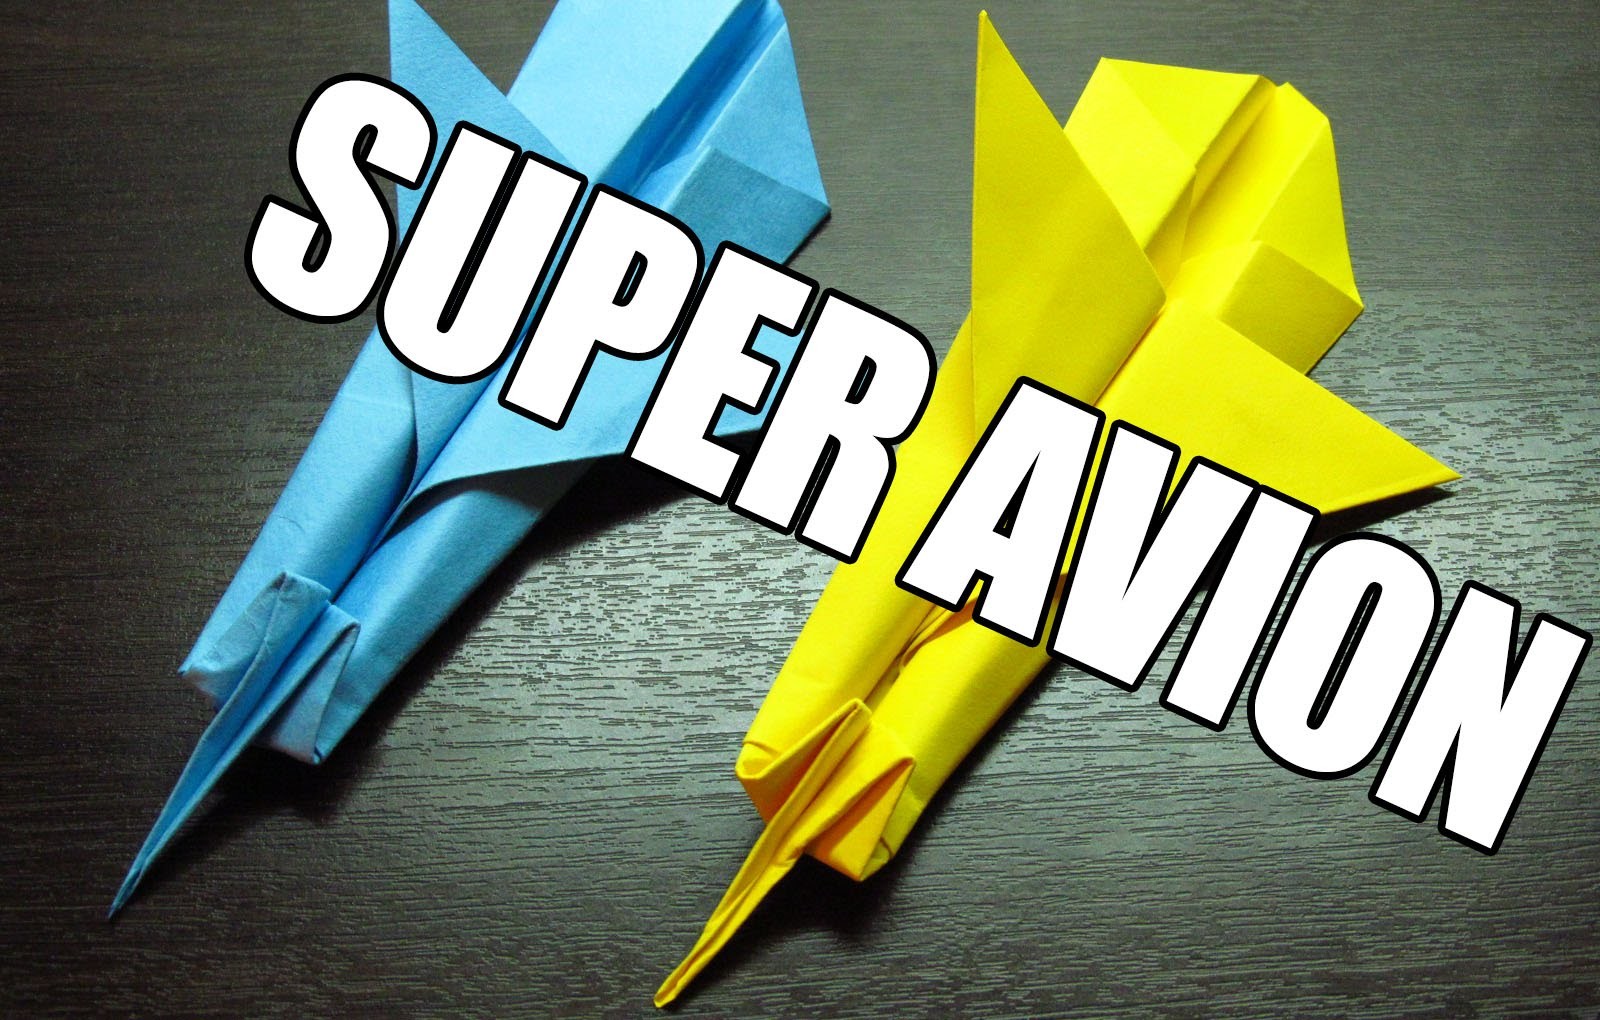 Como hacer un super avion de papel volador | Origamis de papel aviones de papel paso a paso